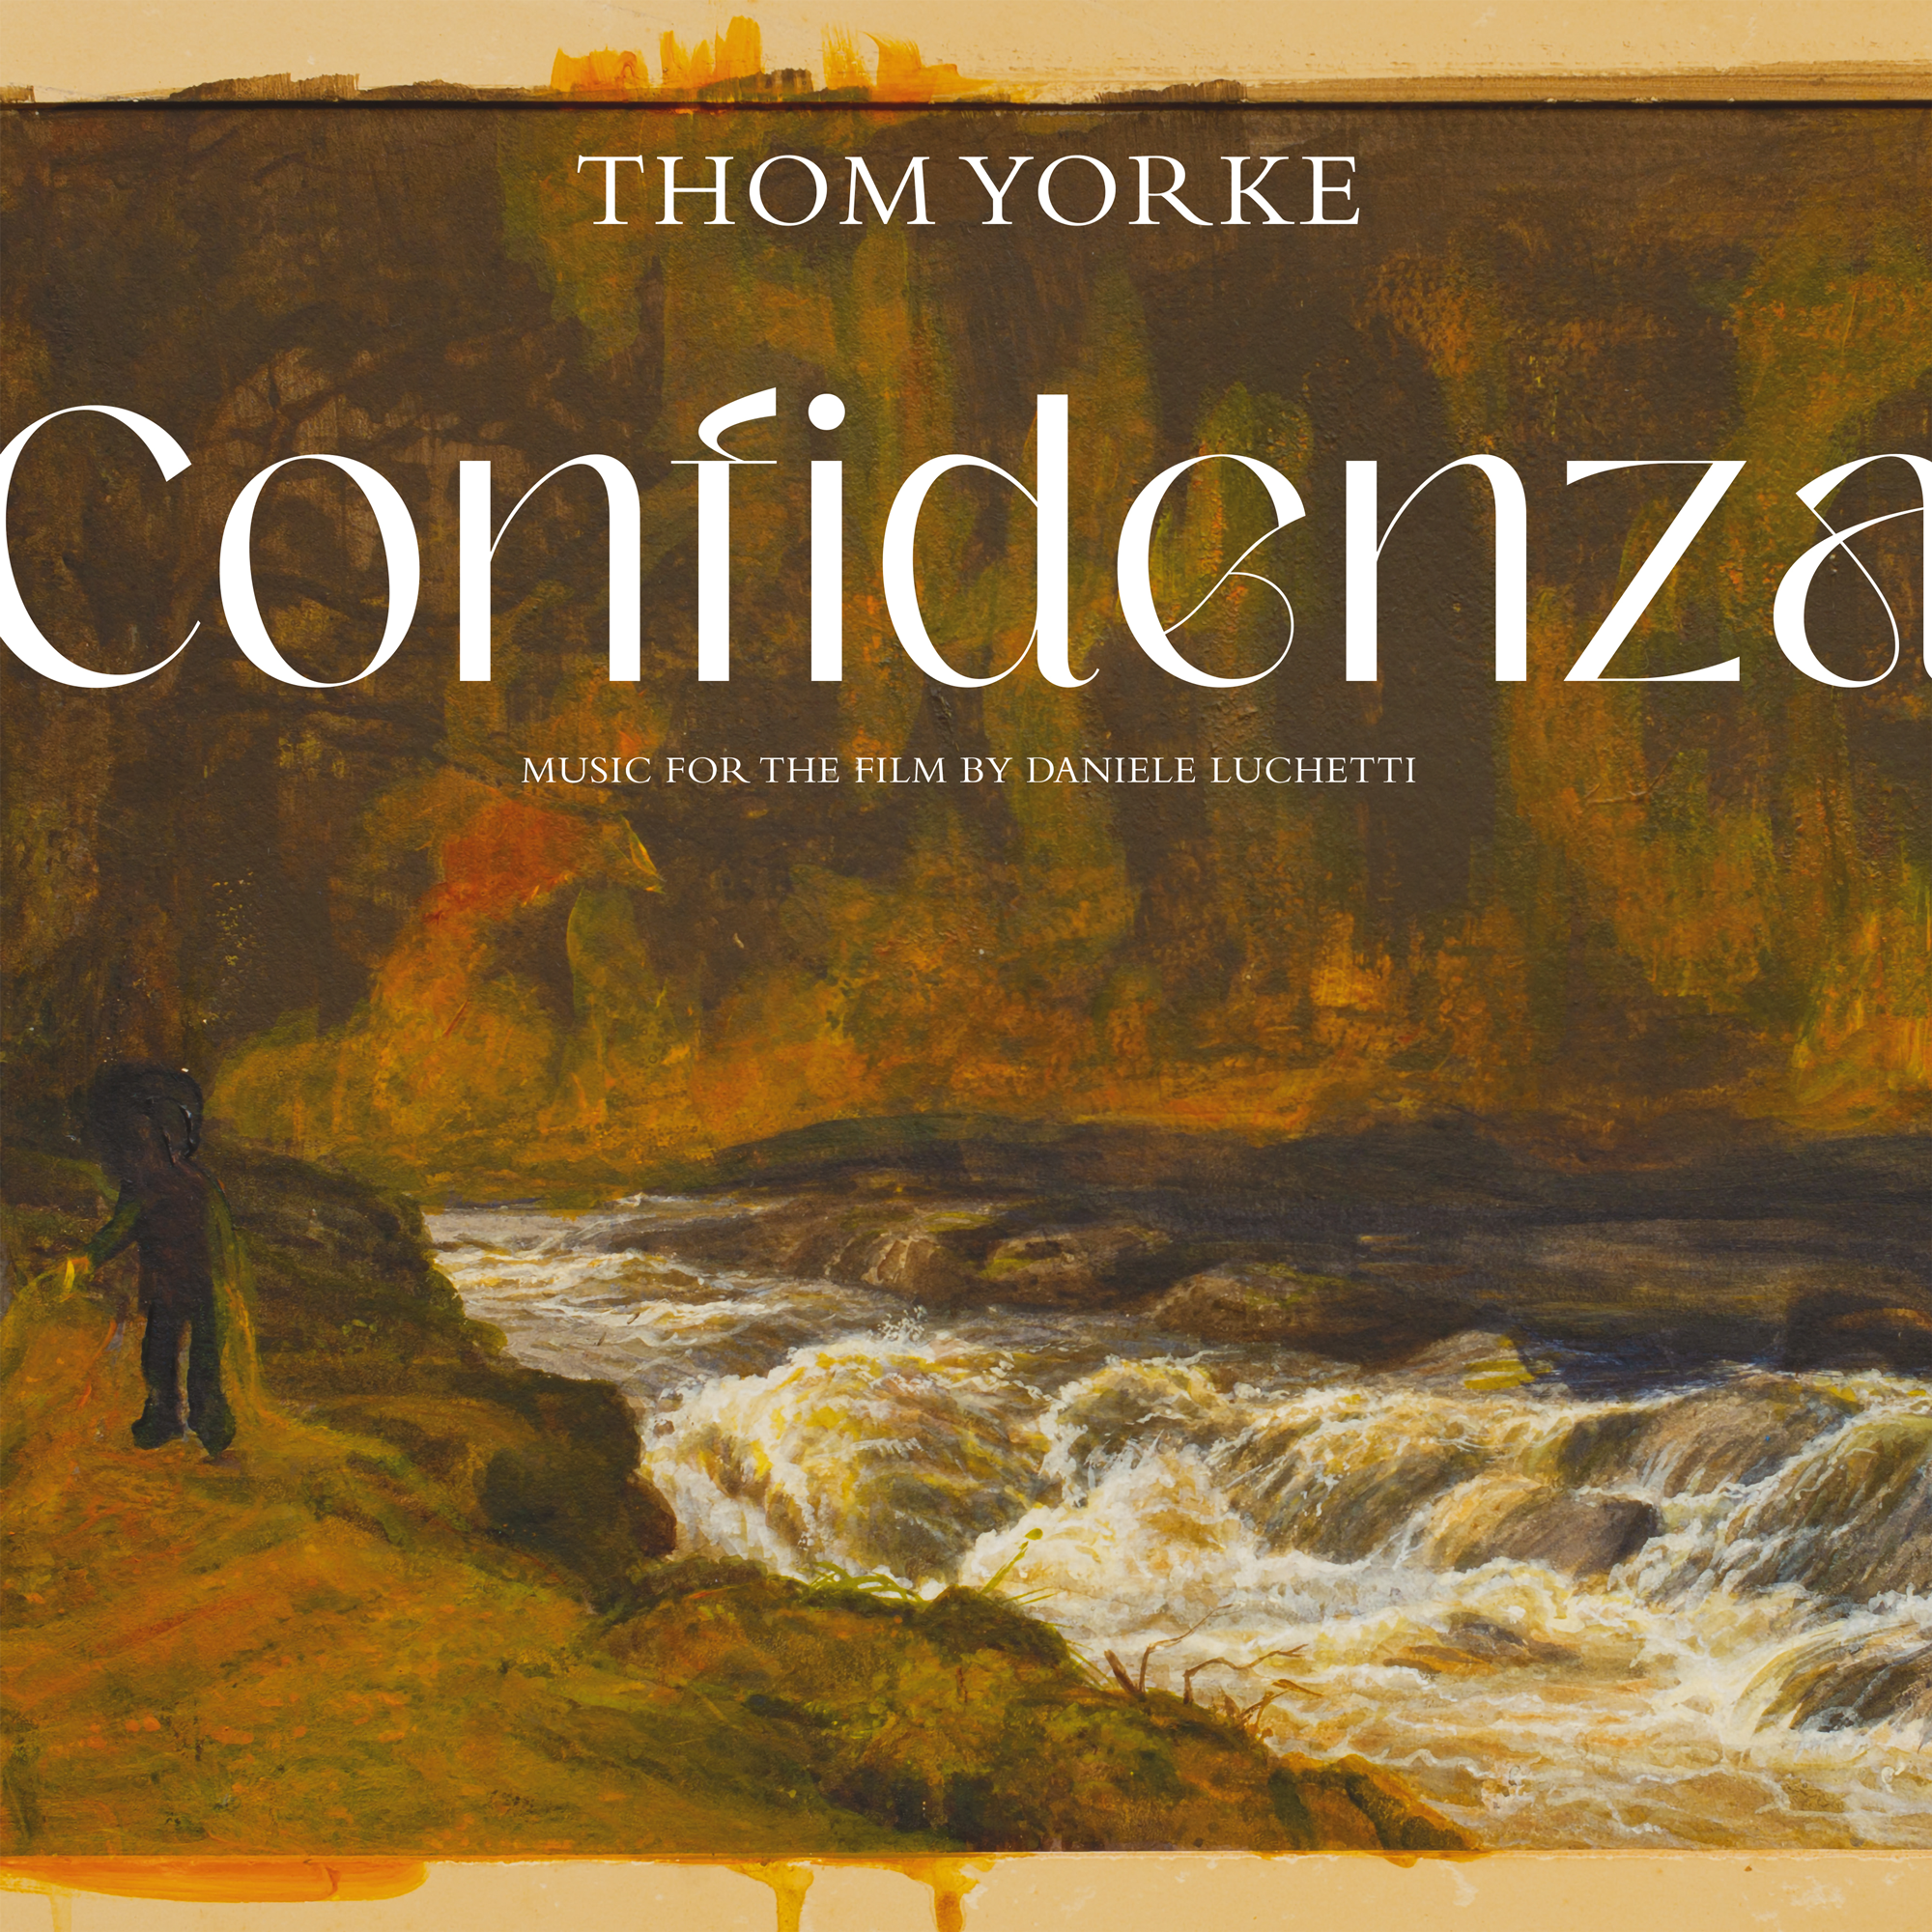 Thom Yorke - Confidenza (OST): Vinyl LP - Sound of Vinyl